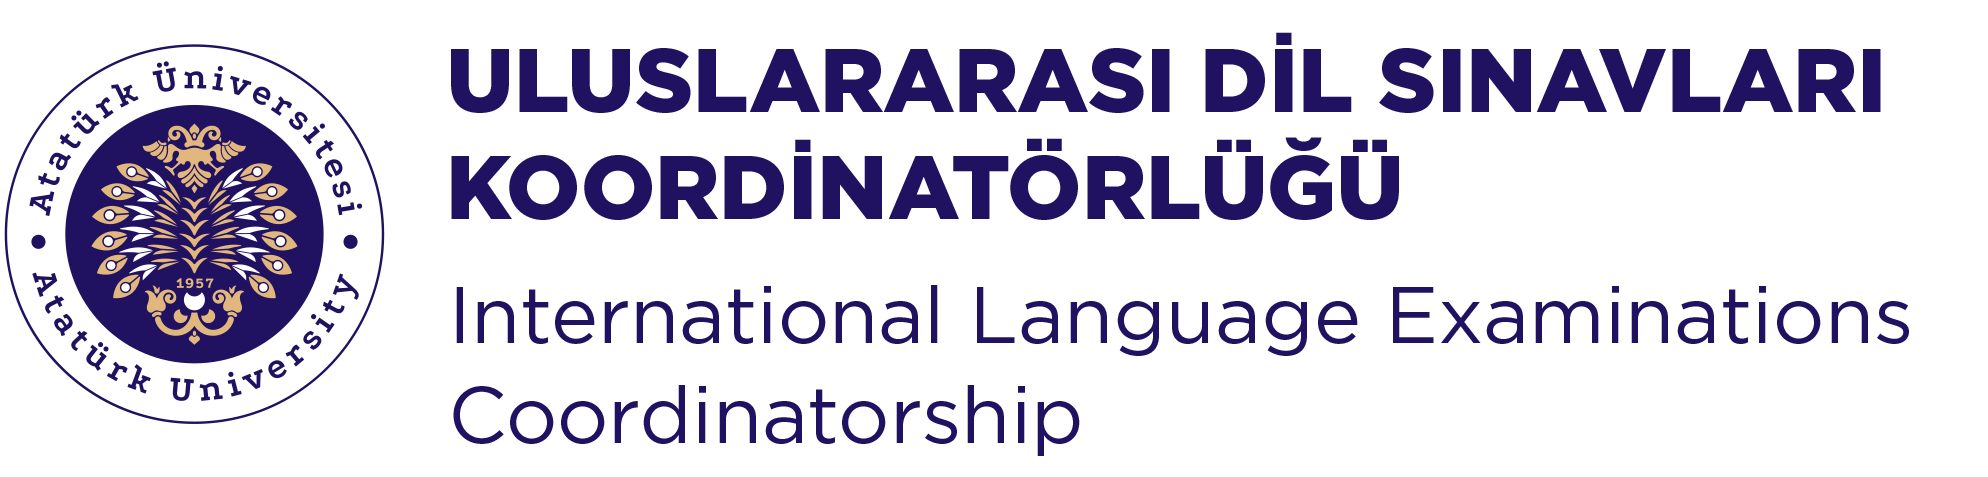 ATAILE - Uluslararası Dil Sınavları Koordinatörlüğü